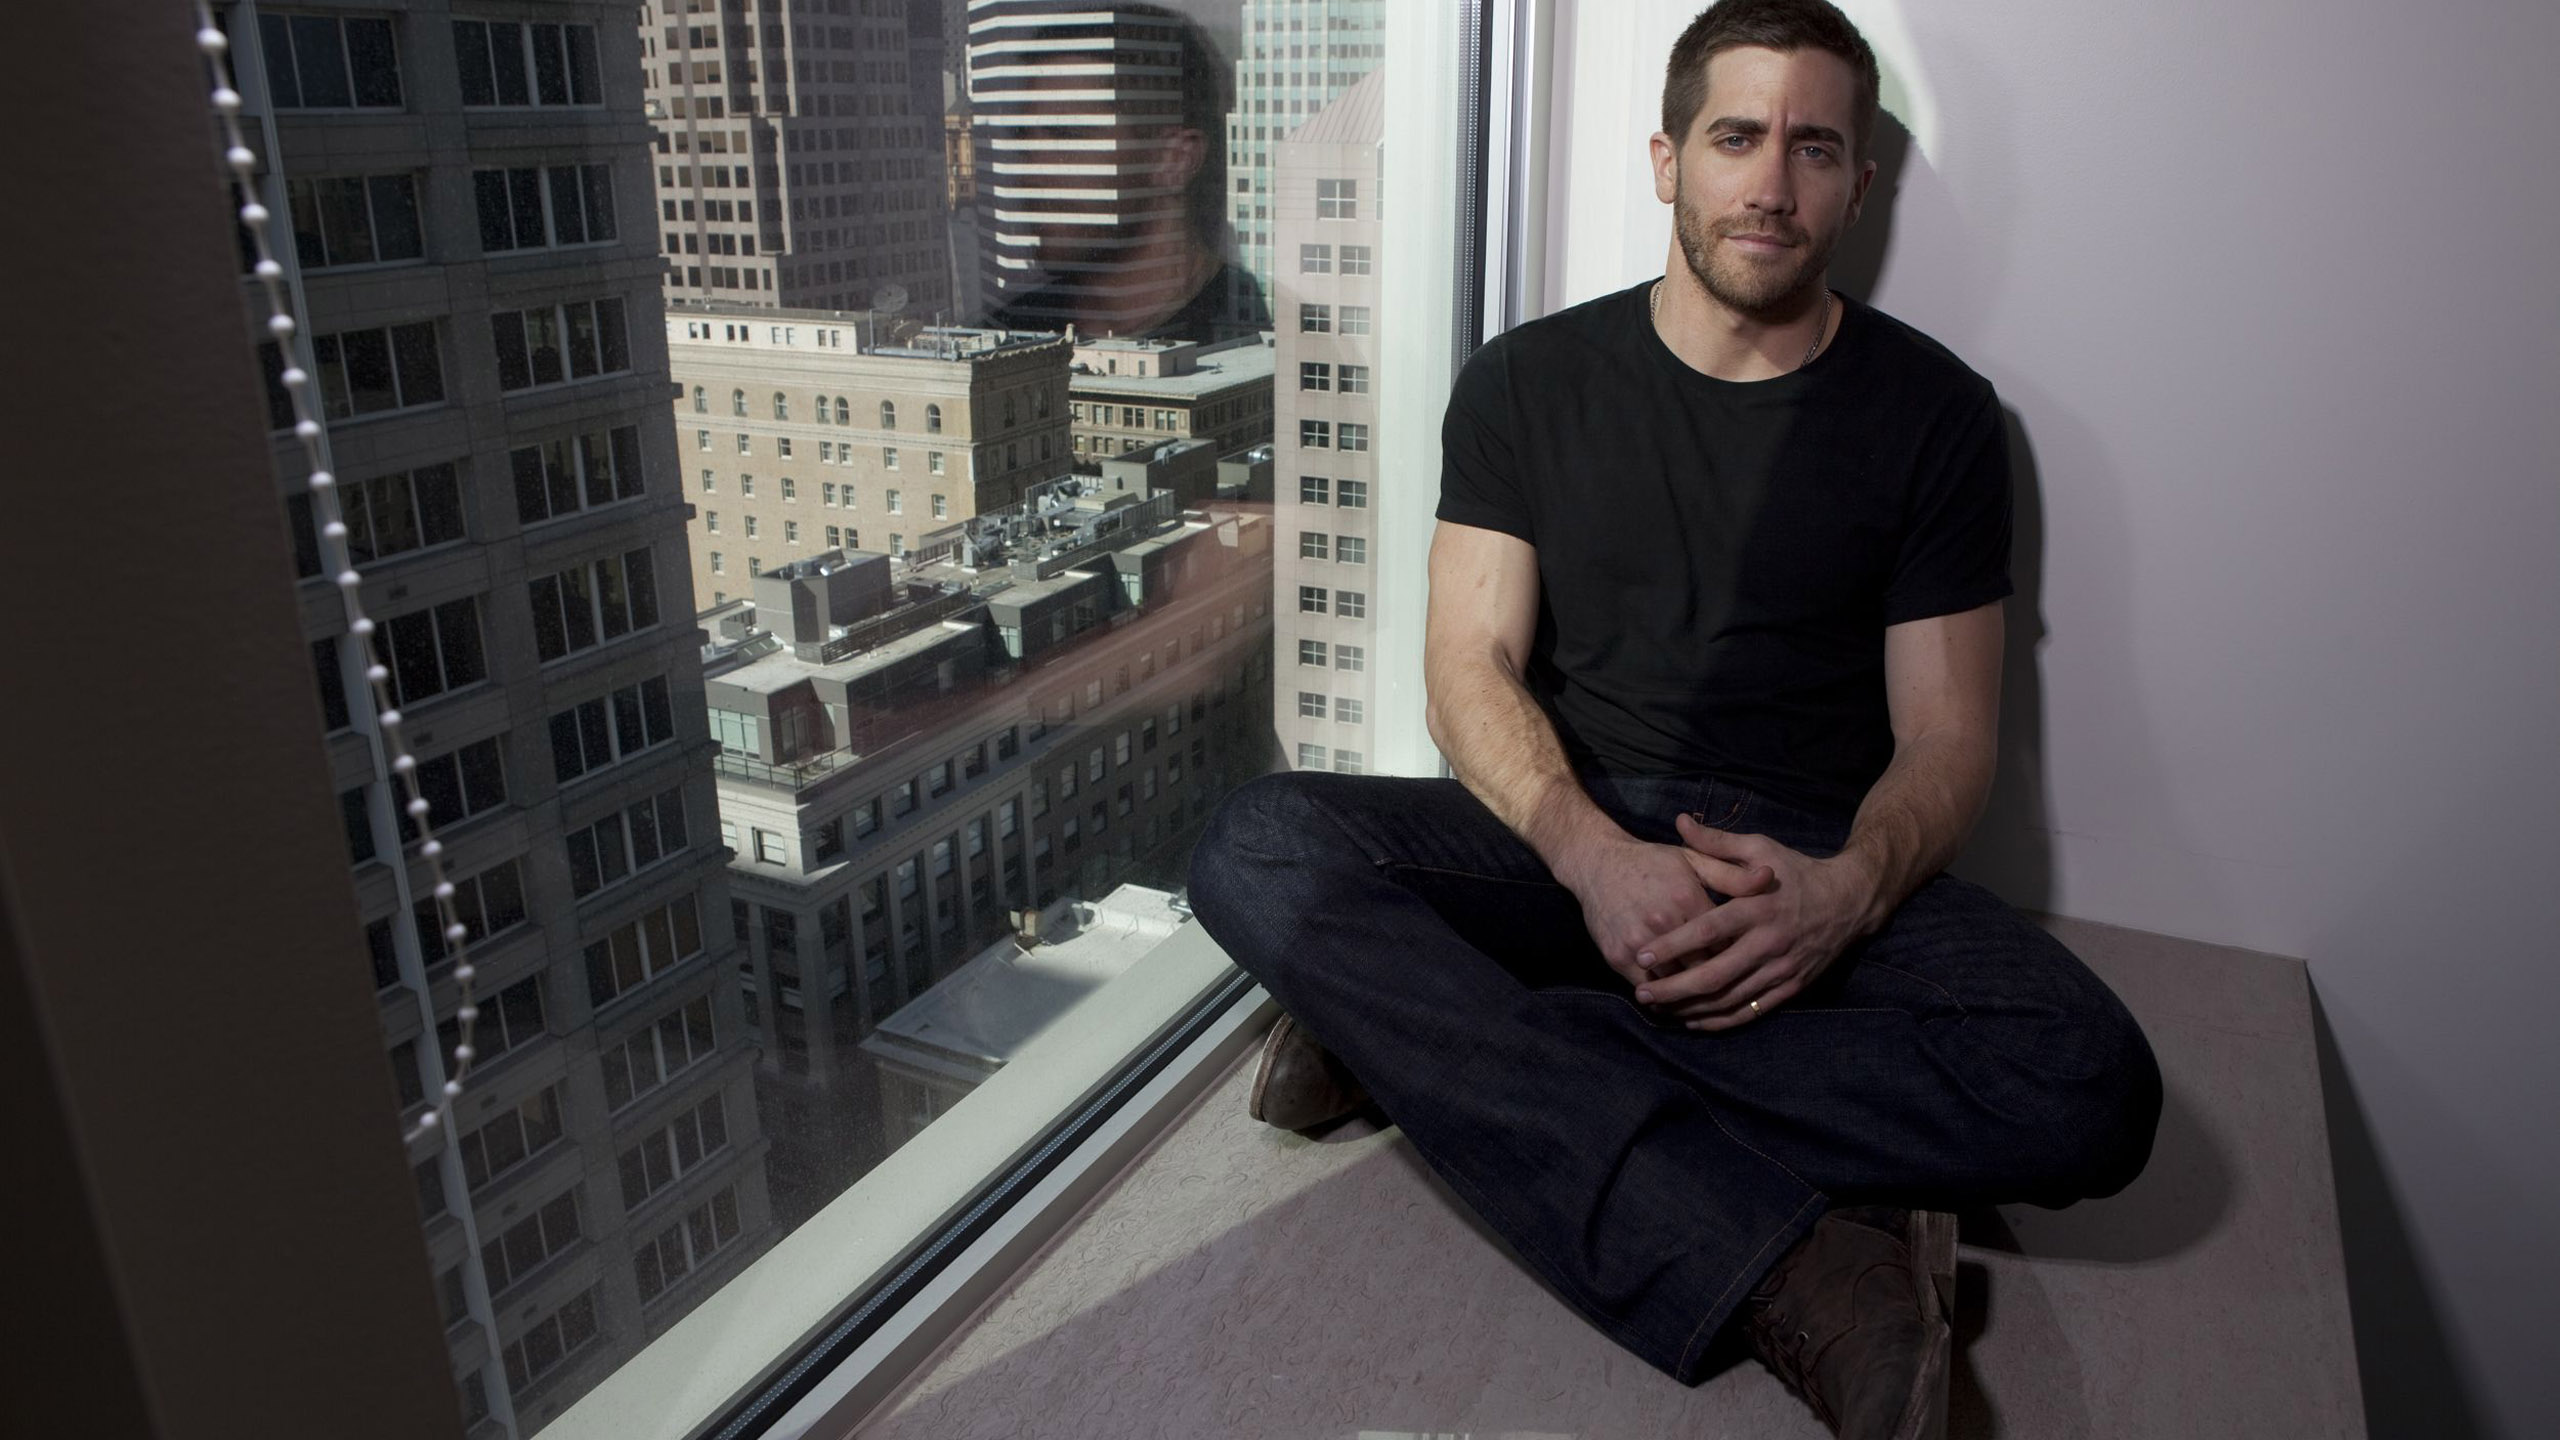 Jake Gyllenhaal Is Leaning On Wall Sitting On Table Wearing Black Dress HD